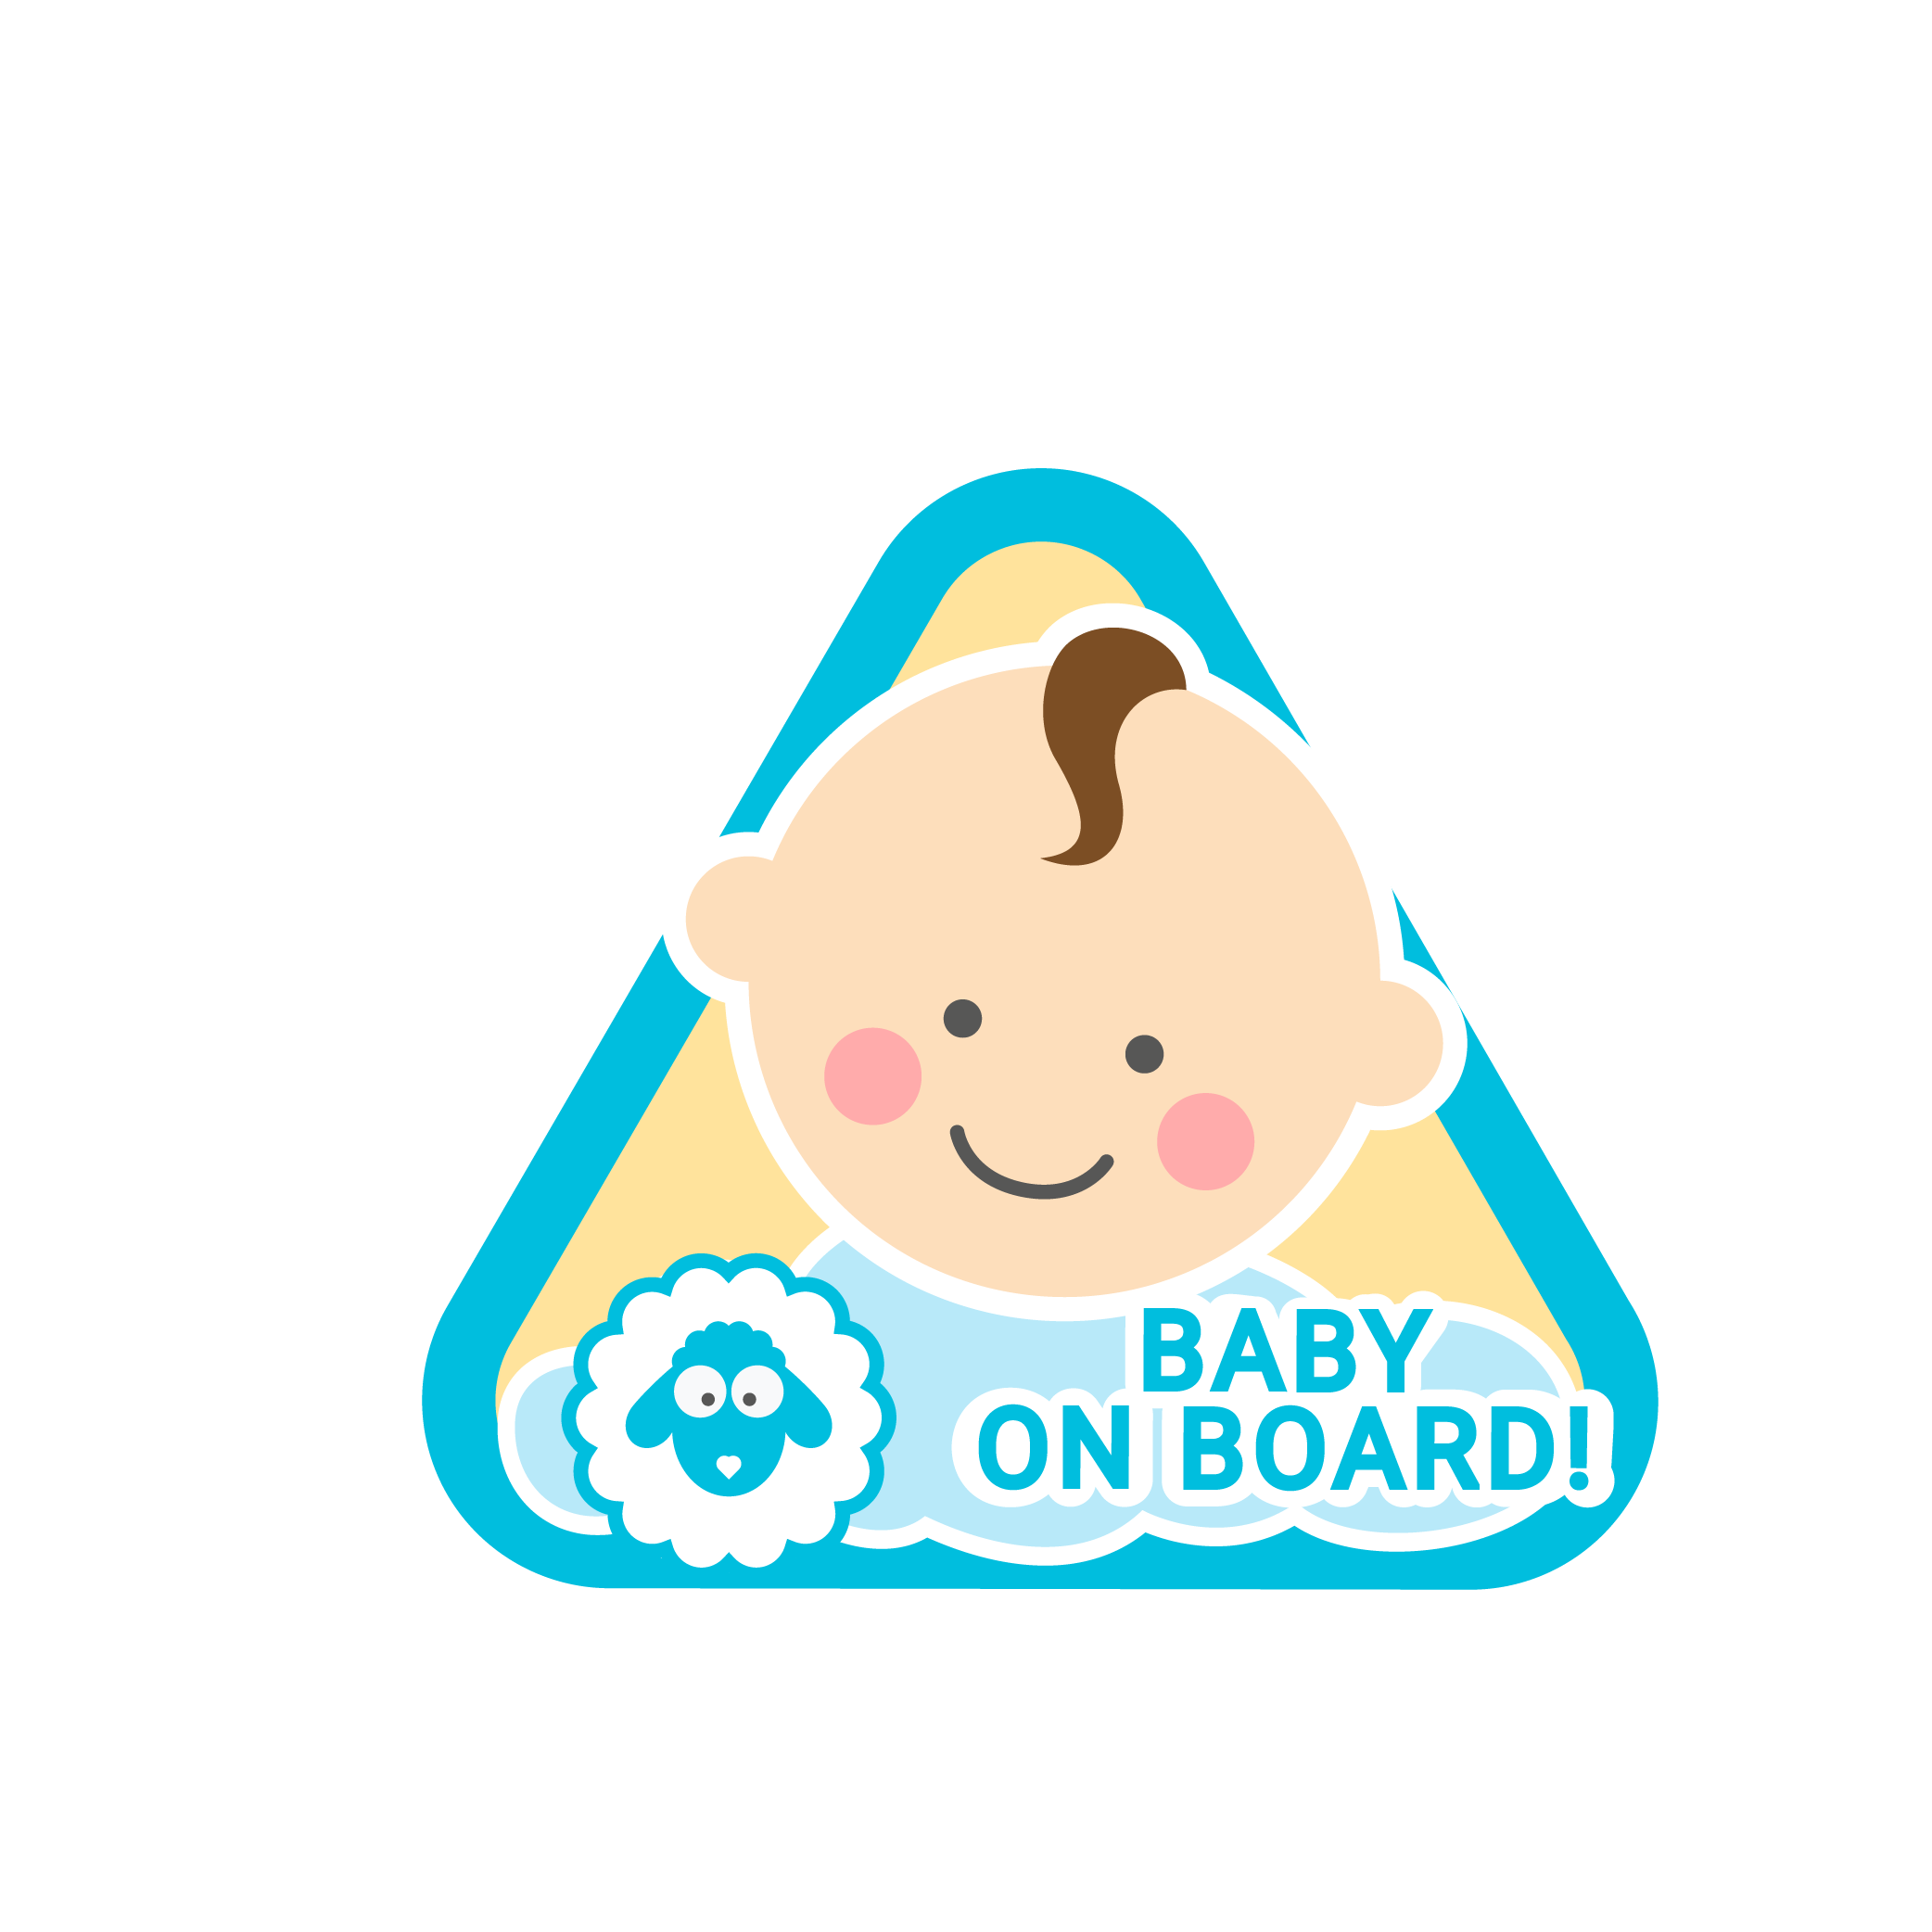 Baby on board boy